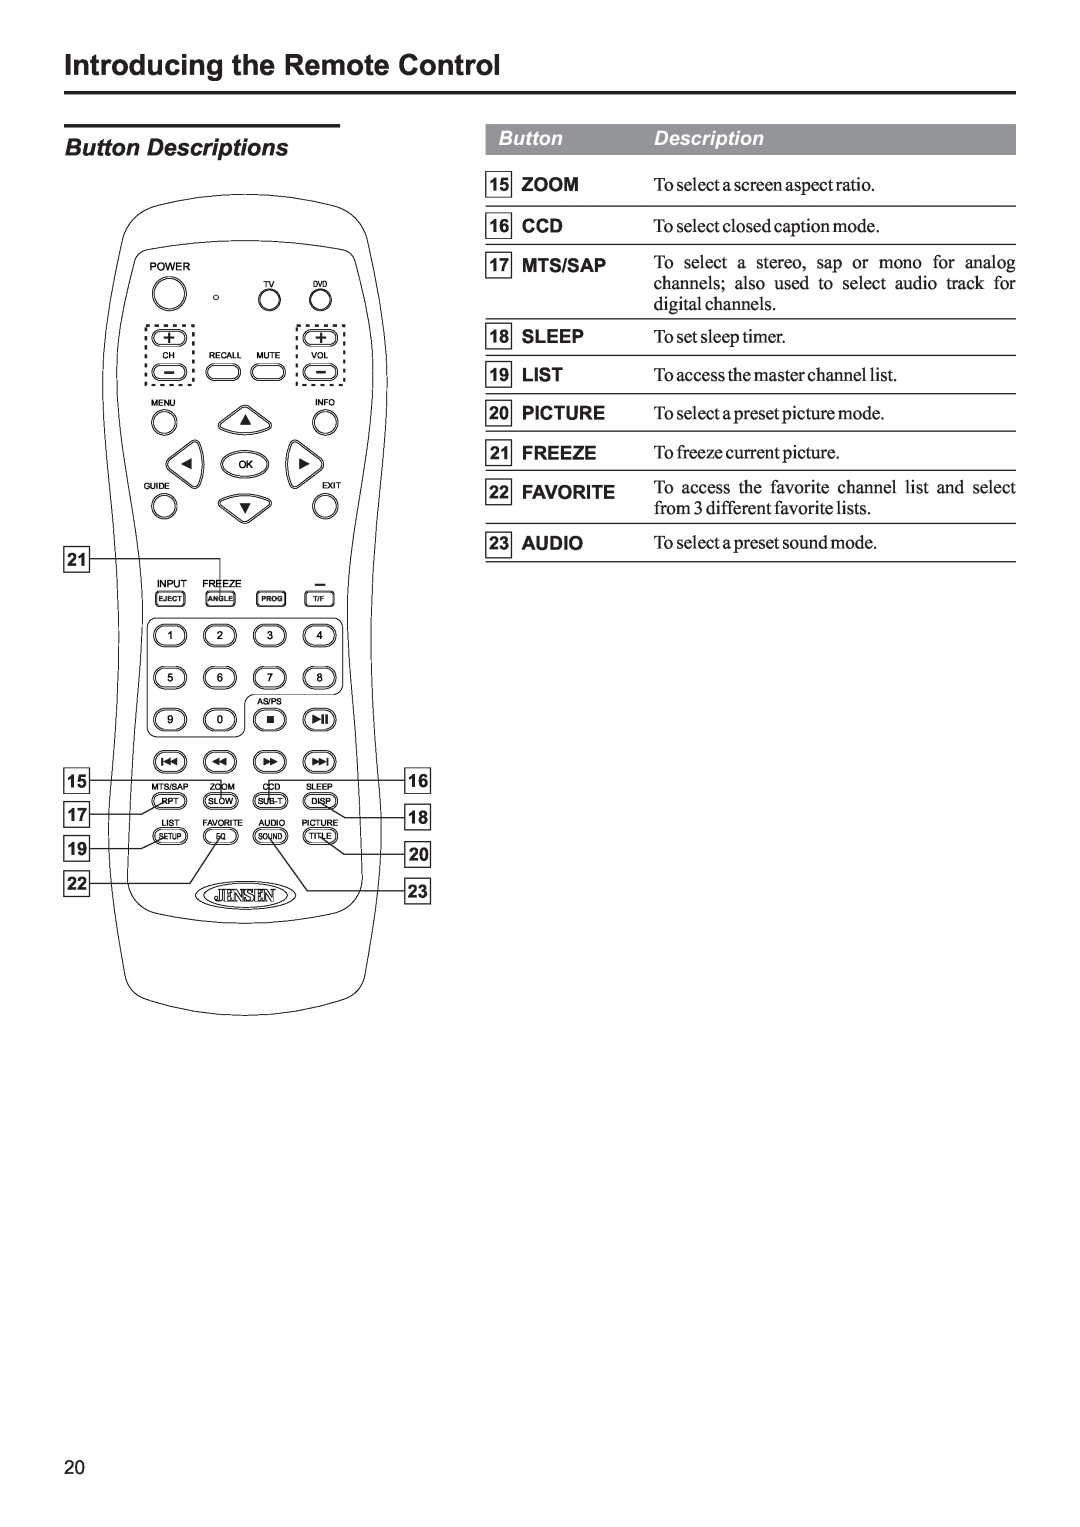 Jensen JE3207 Introducing the Remote Control, Button Descriptions, Zoom, Mts/Sap, Sleep, List, Picture, Freeze, Favorite 